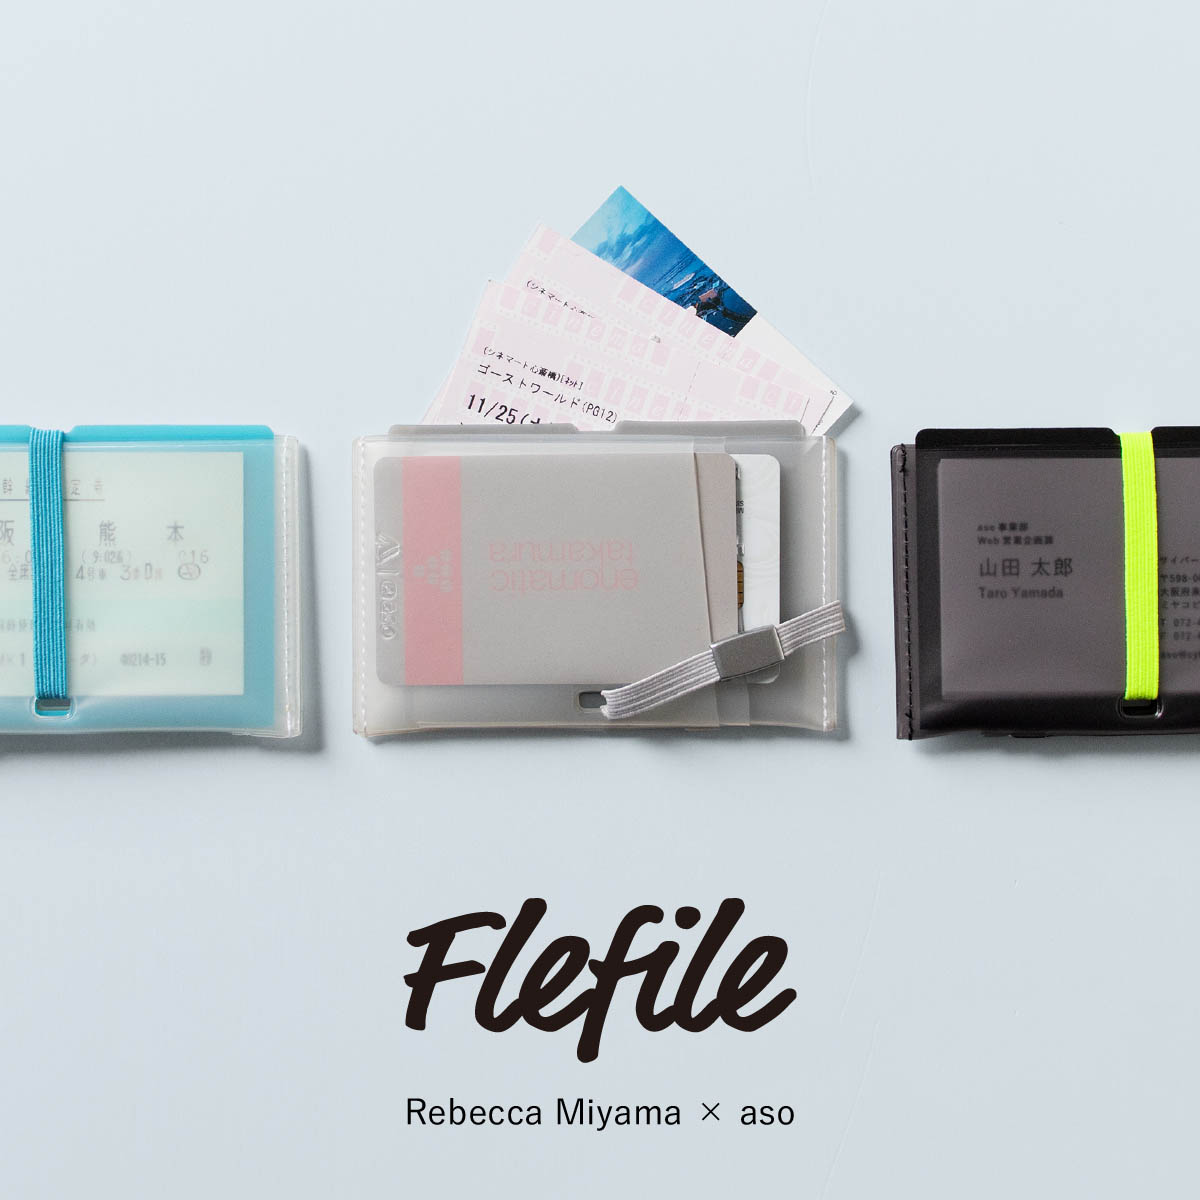 (クーポン発行中!) [ aso × Rebecca Miyama ] Flefile card フレファイル カード ミヤマレベッカ コラボ カードケース PVC 透明 mr-m2